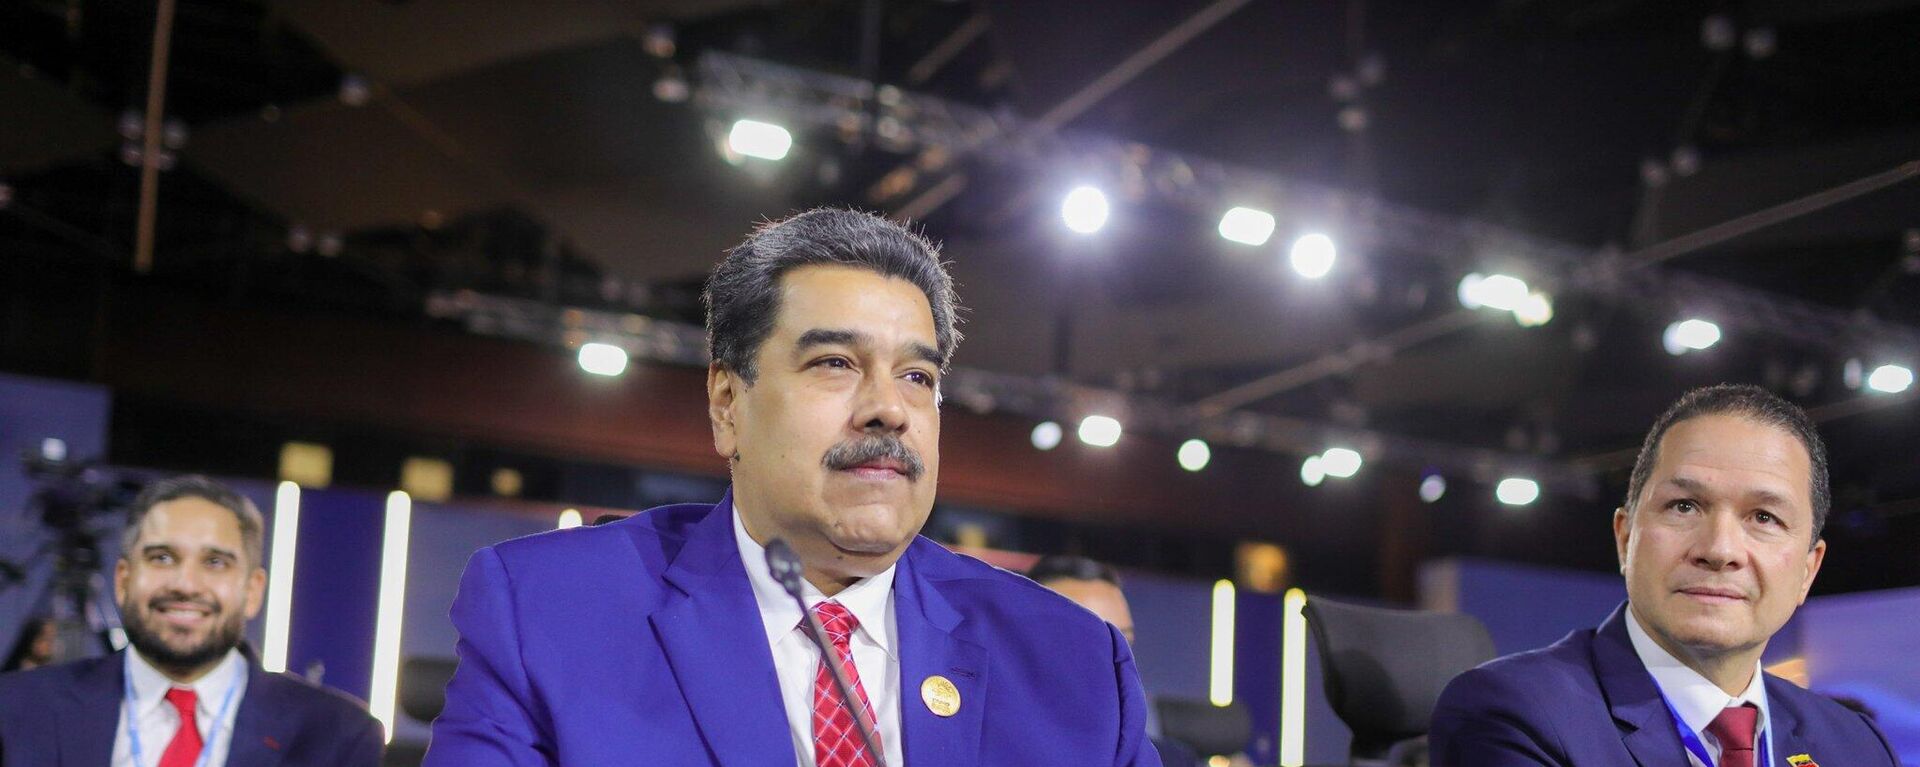 Nicolás Maduro, presidente de Venezuela, en la Conferencia de las Naciones Unidas sobre el Cambio Climático (COP27) - Sputnik Mundo, 1920, 07.11.2022